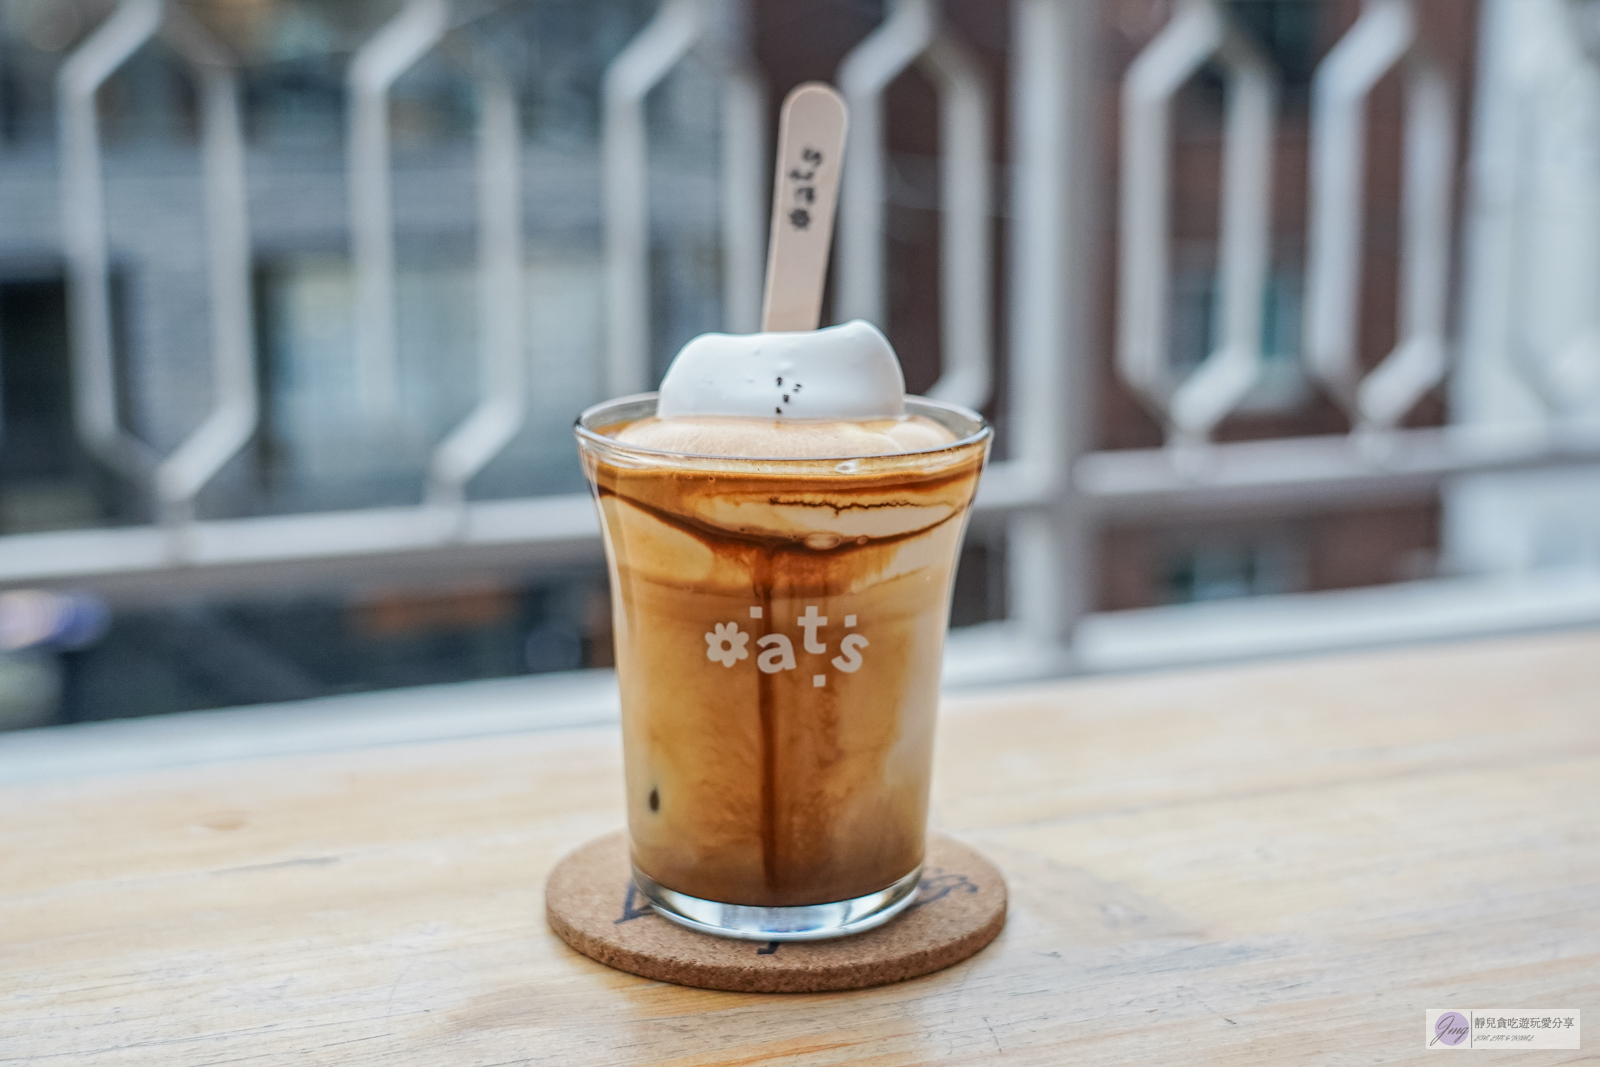 韓國首爾美食-oats coffee-首爾維也納咖啡三巨頭之一！漂浮貓咪雲朵奶油吸睛又好喝/延南洞咖啡廳 @靜兒貪吃遊玩愛分享